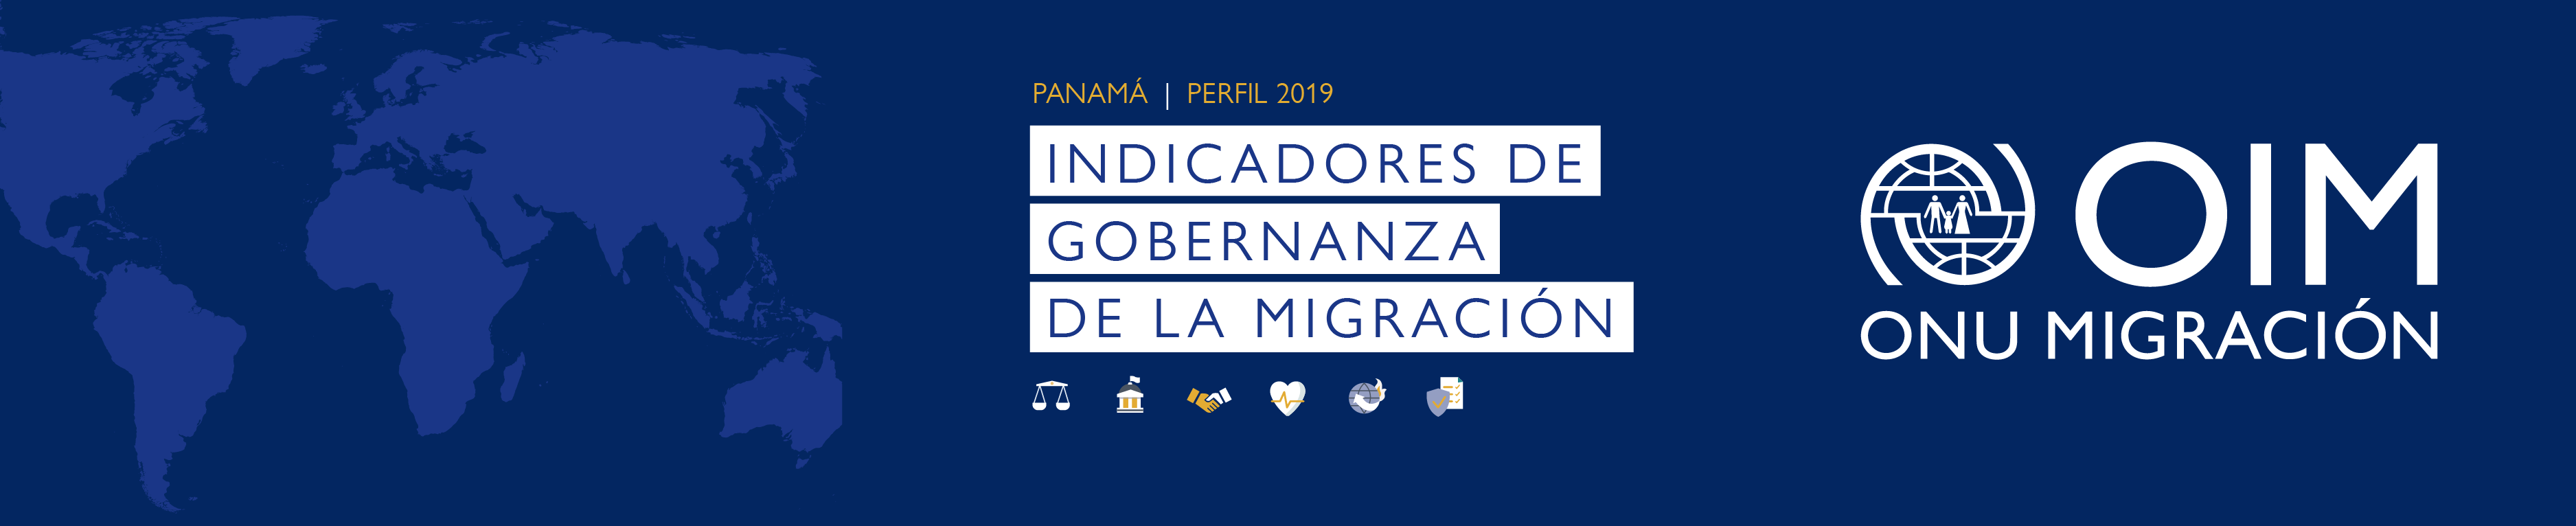 Indicadores de gobernanza de la migración - Panamá